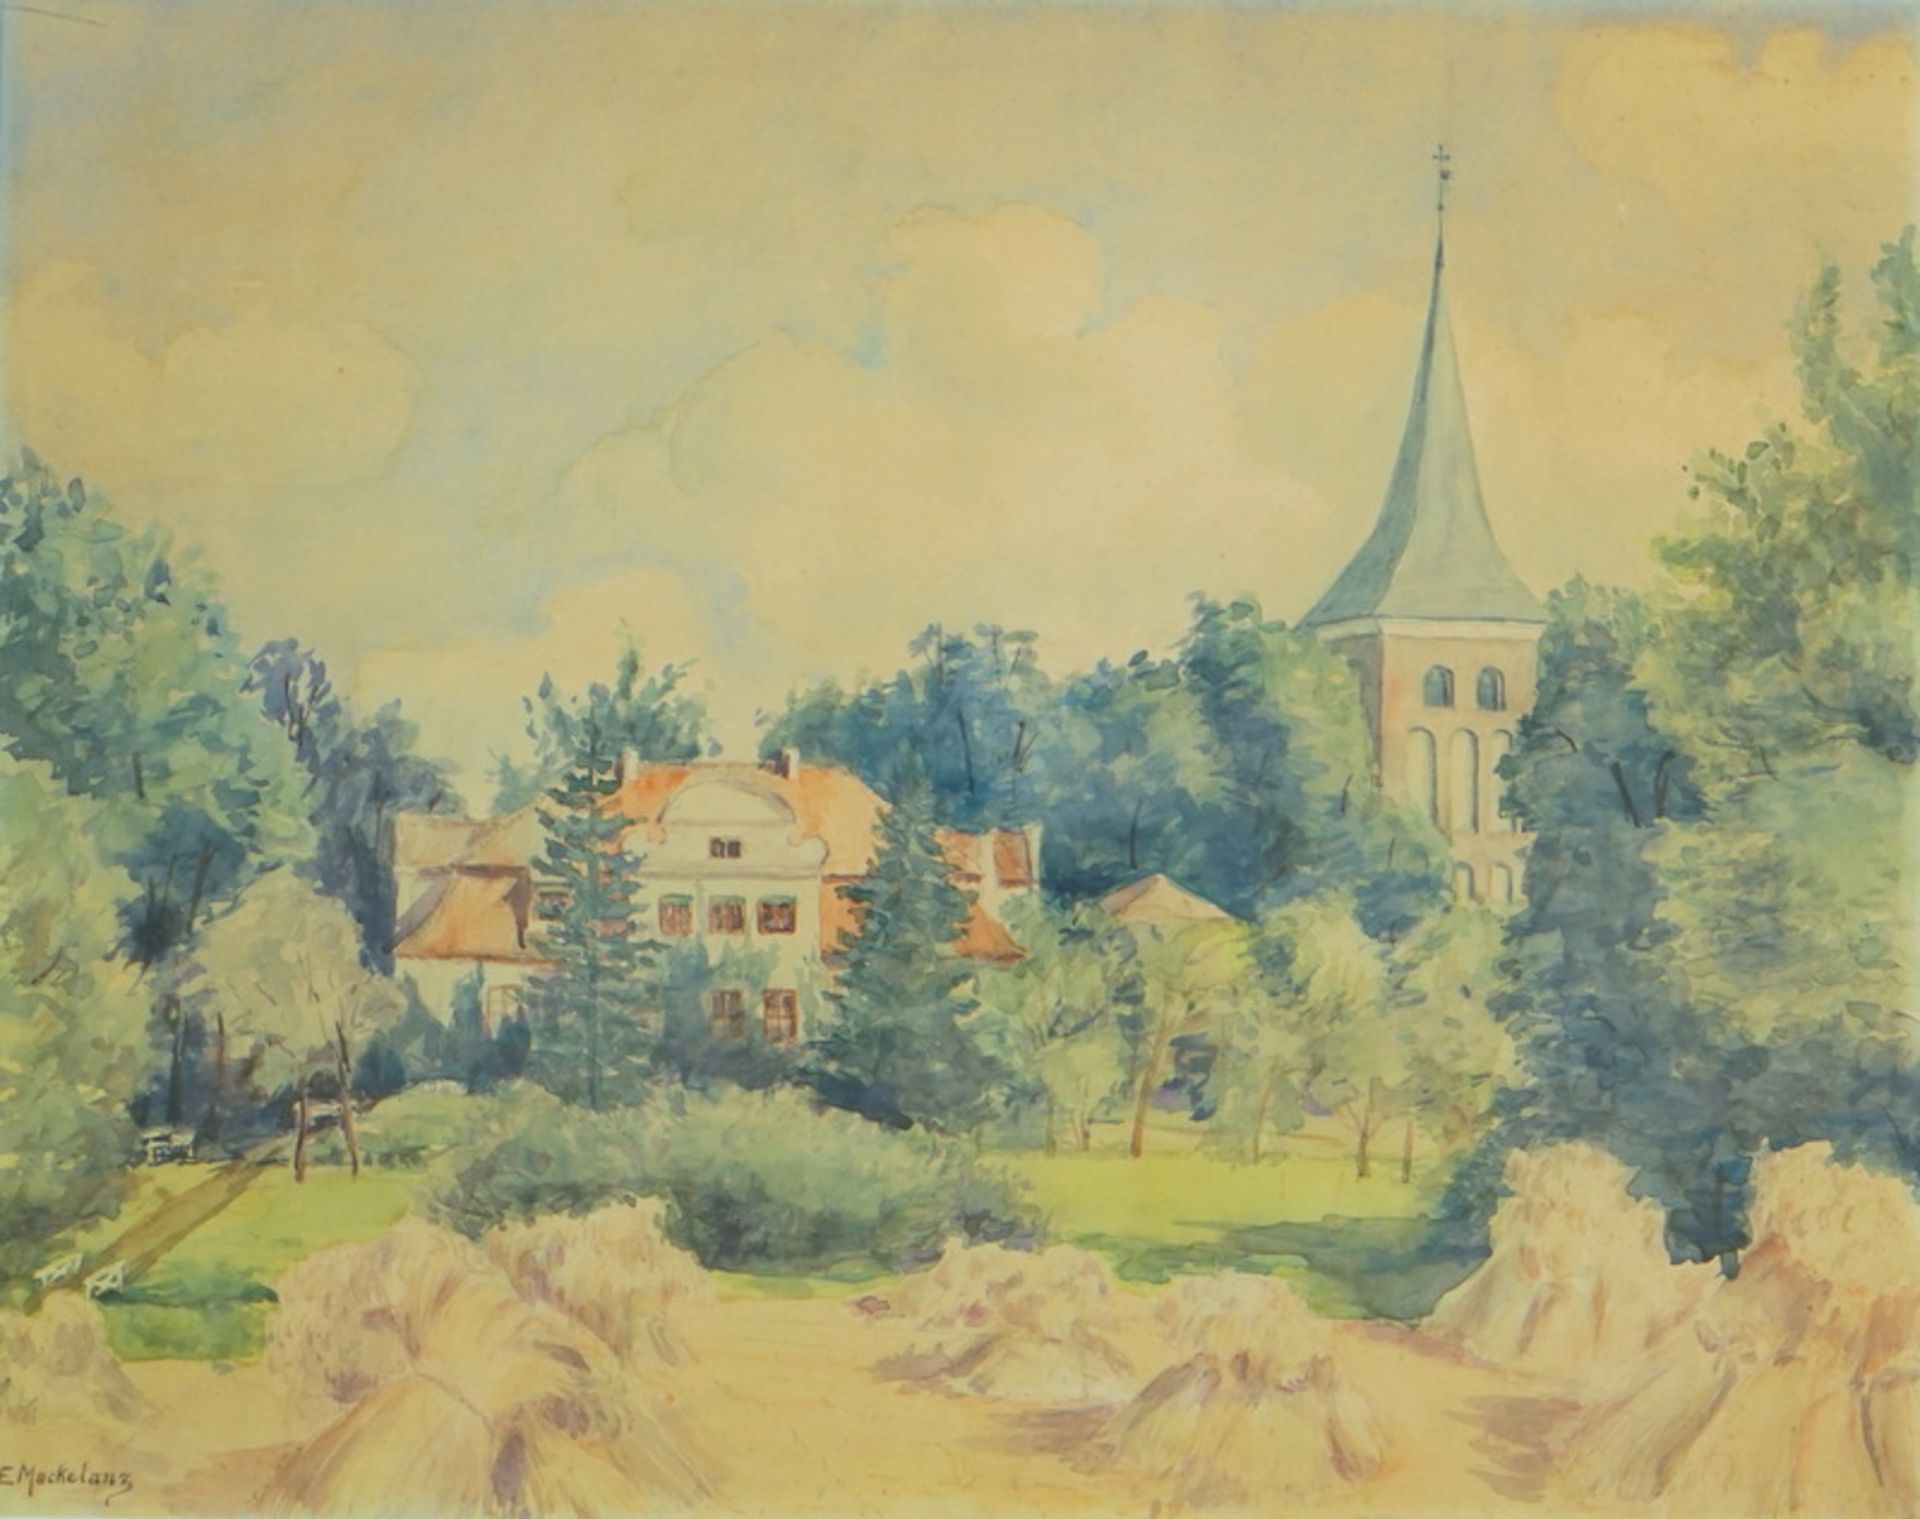 Macketanz, E. (unentschlüsselt): Ansicht eines Gutshauses mit Kirche